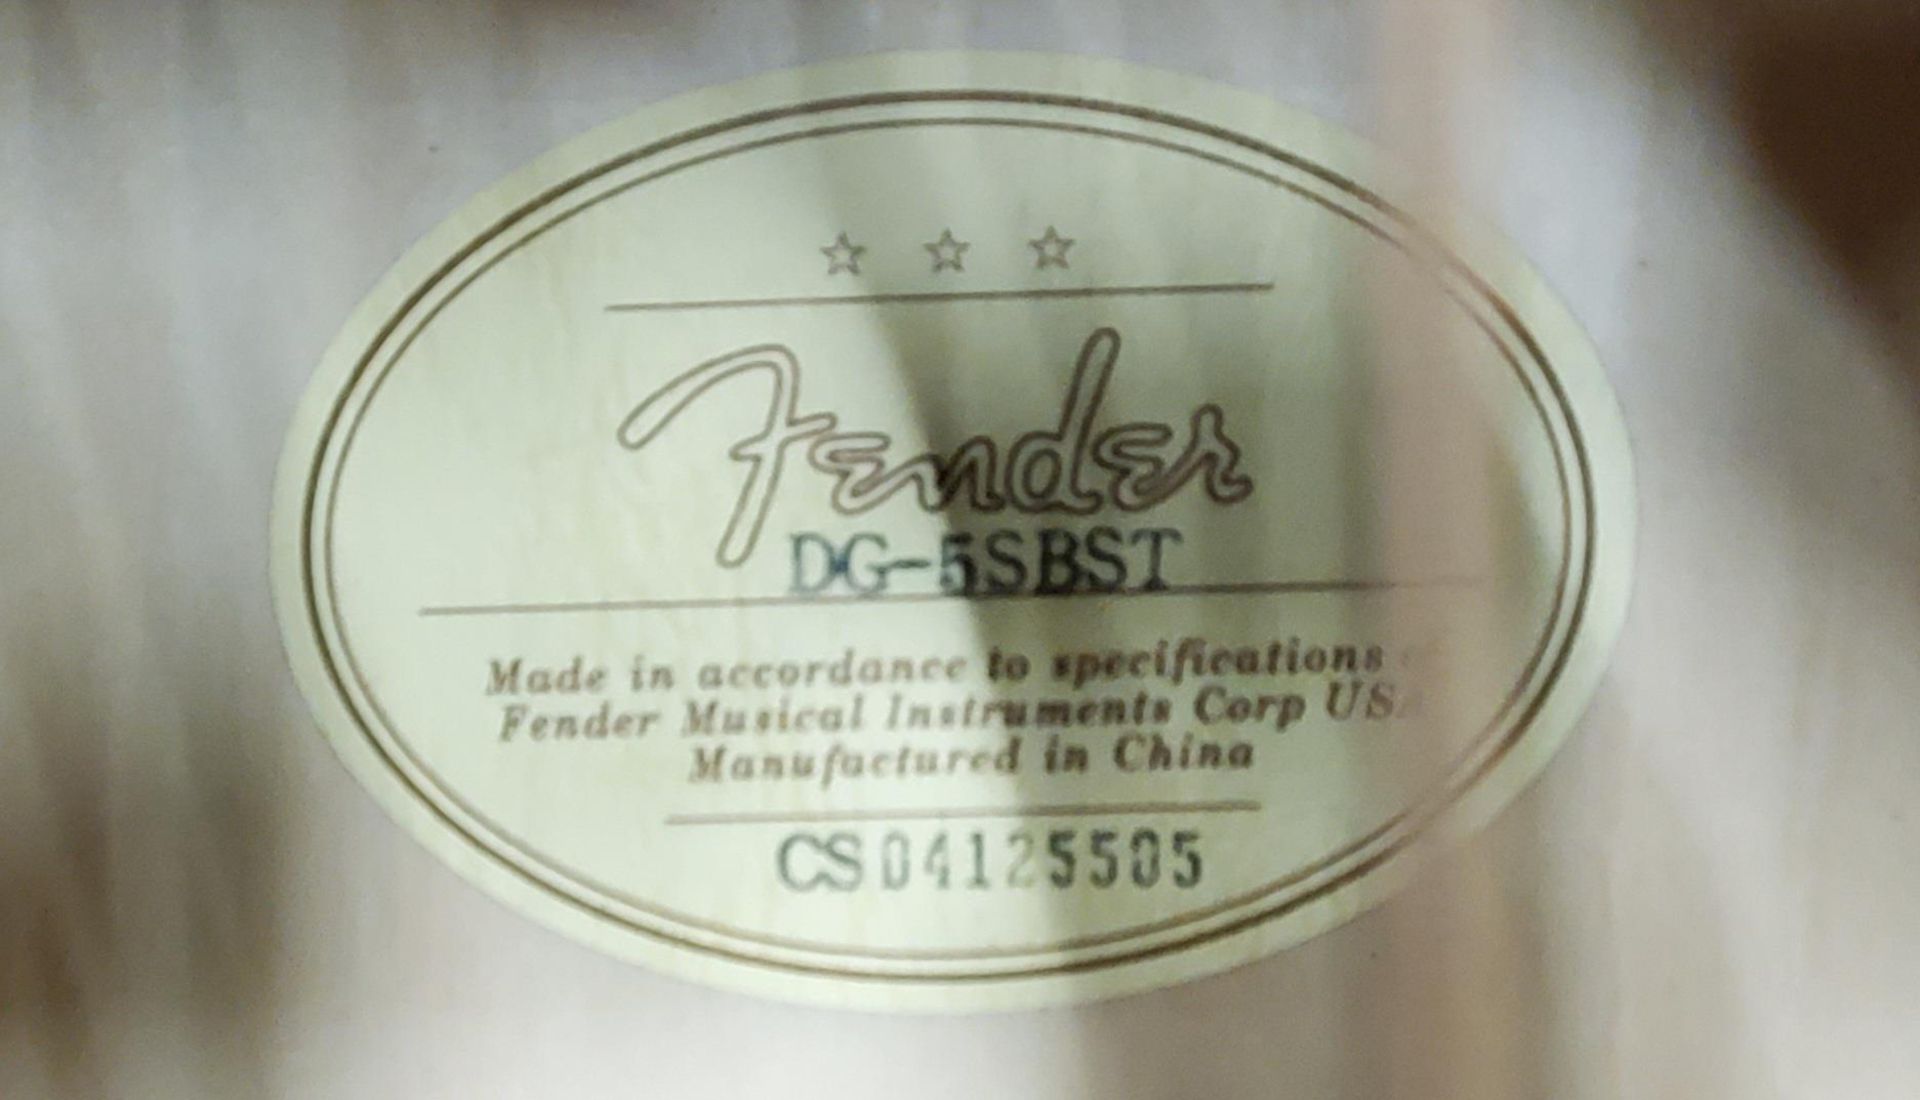 A CASED FENDER DG-5SBST ACOUSTIC GUITAR - Image 3 of 4